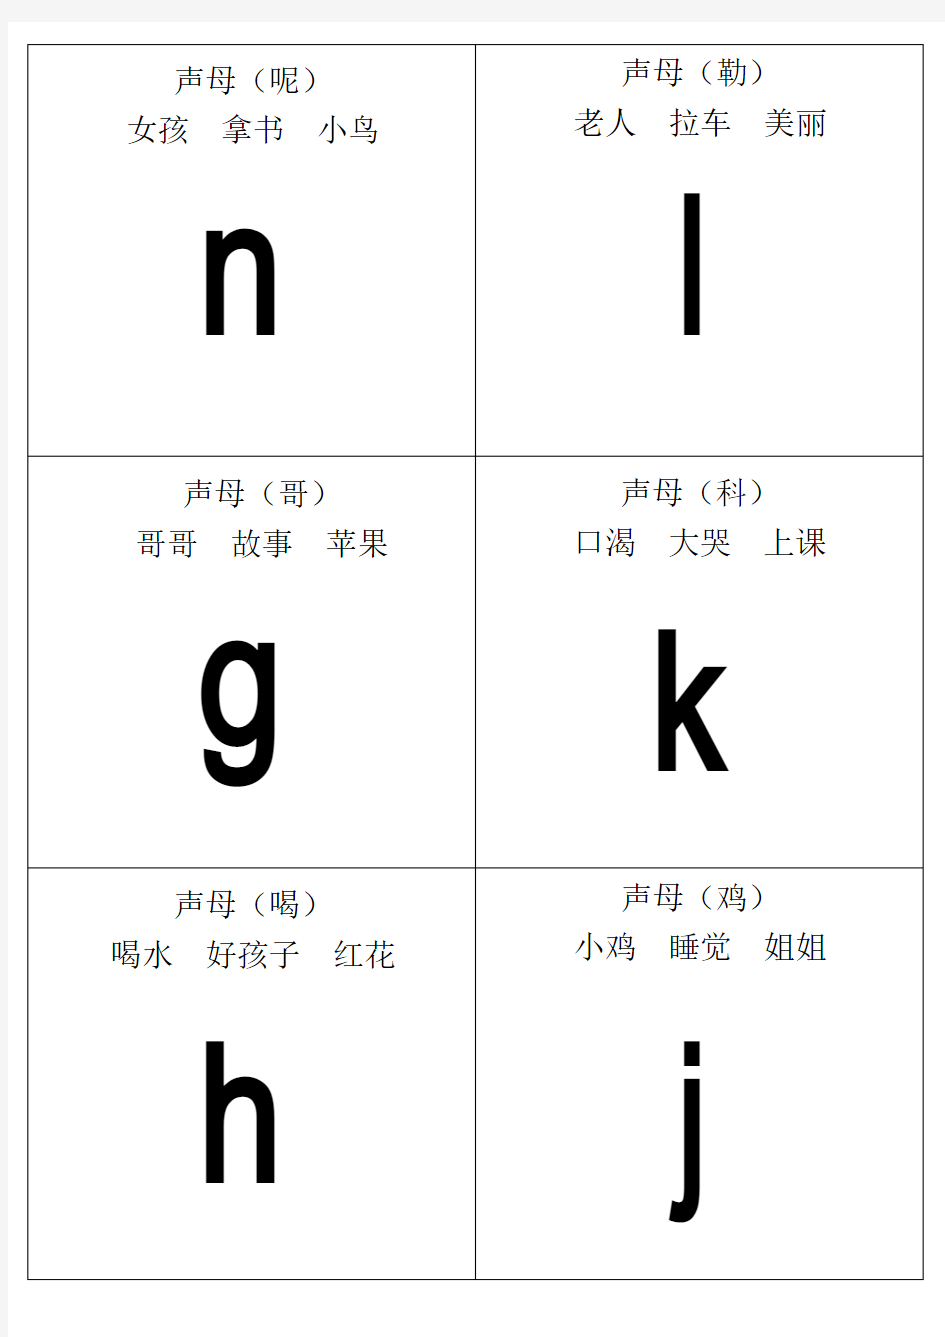 (完整版)自己整理汉语拼音字母表卡片-读音(A4直接打印)